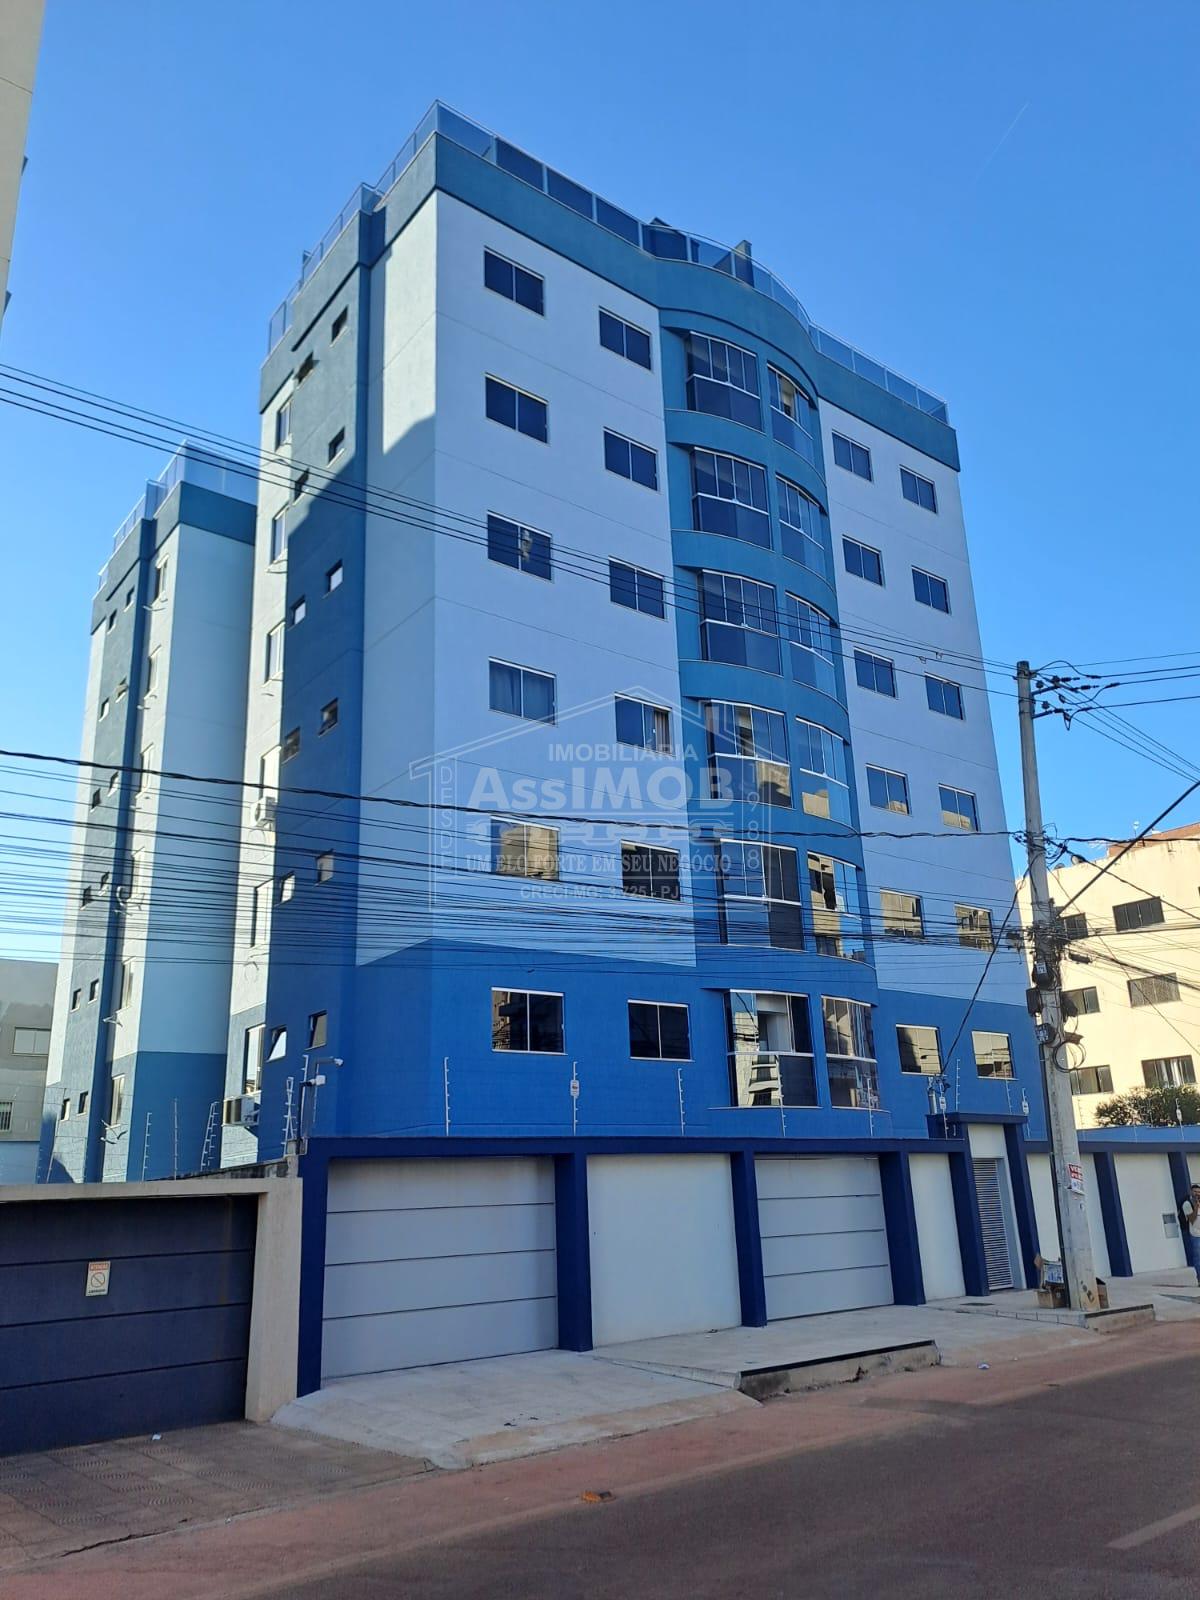 Apartamento para locaçã no bairro Joquei Clube em PARACATU - MG